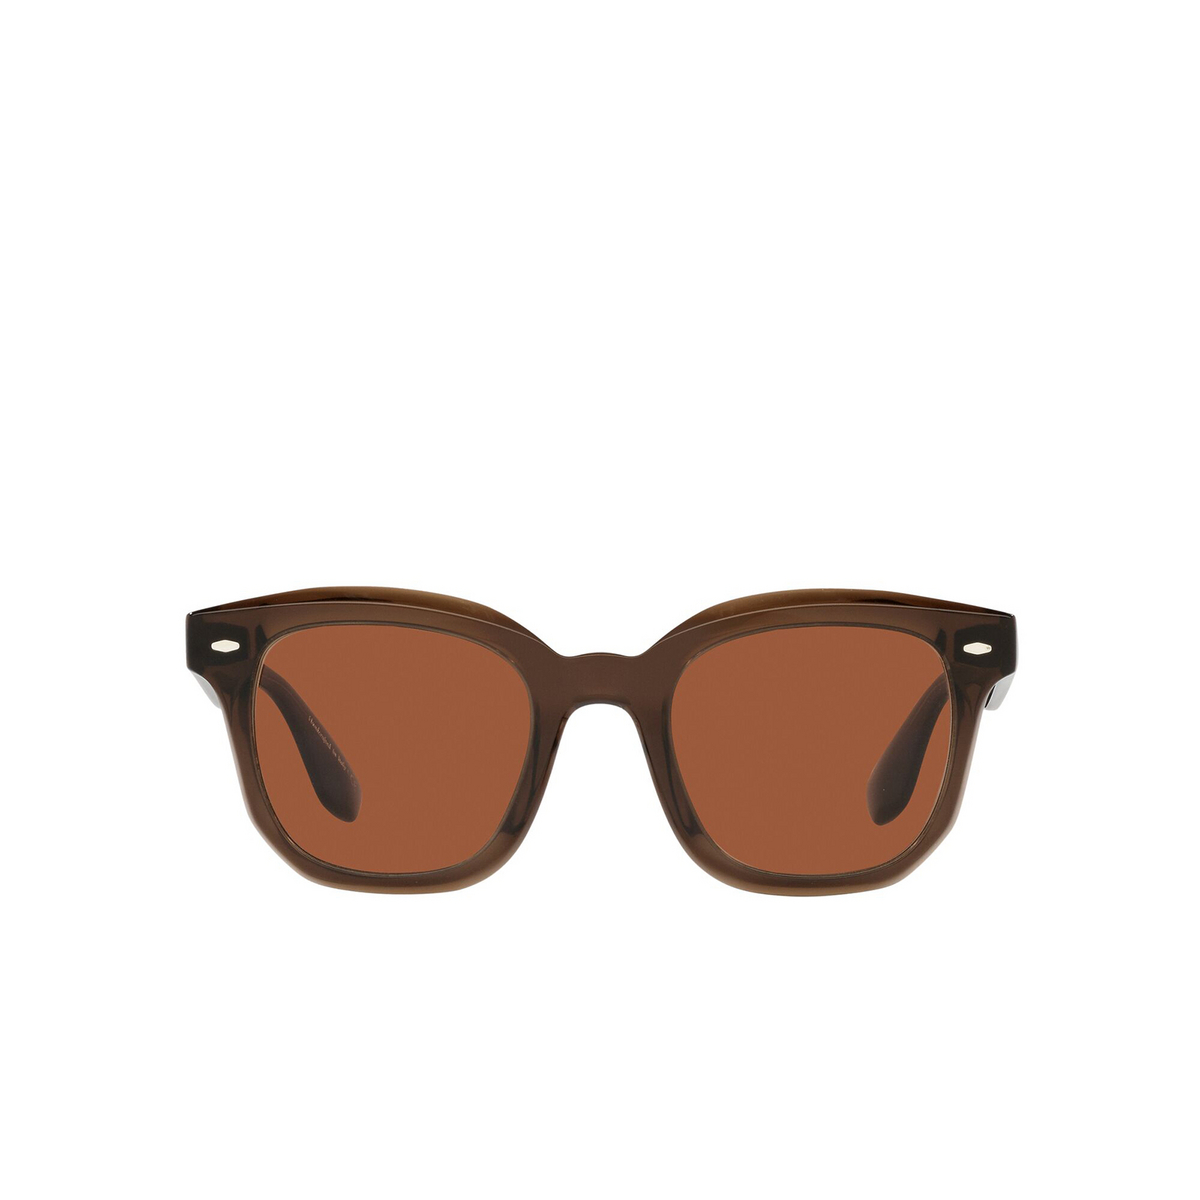 Oliver Peoples® Square Sunglasses: Filu' OV5472SU color Espresso 162553 - front view.